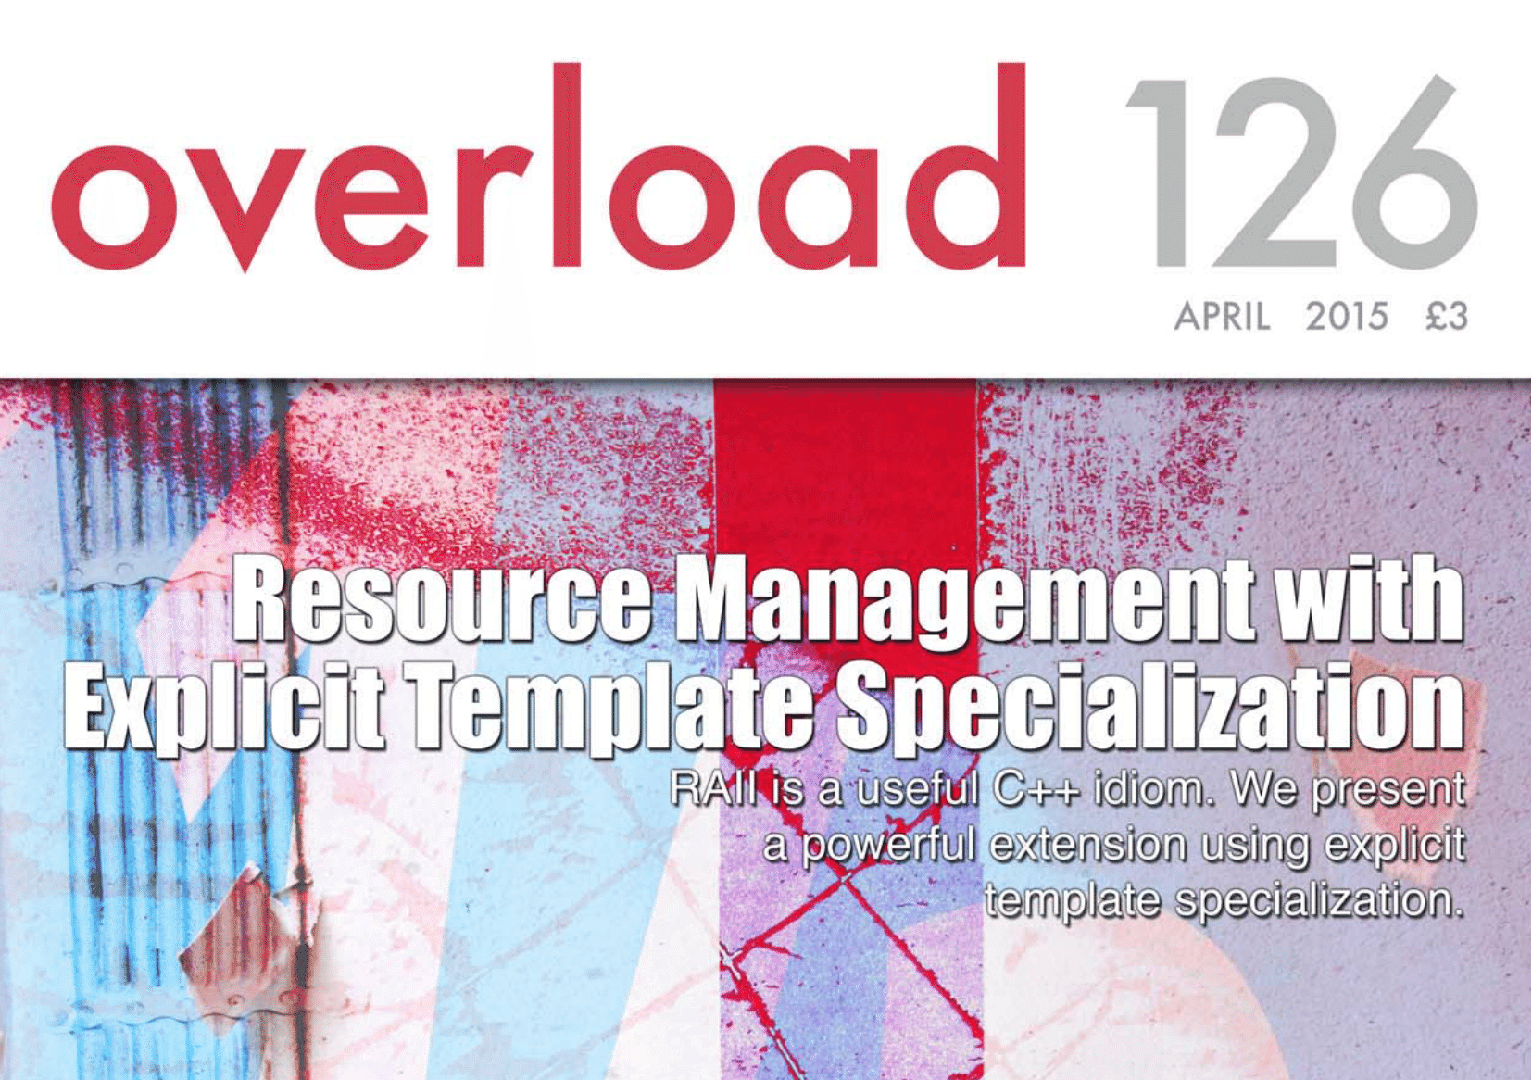 Overload journal #126, April 2015